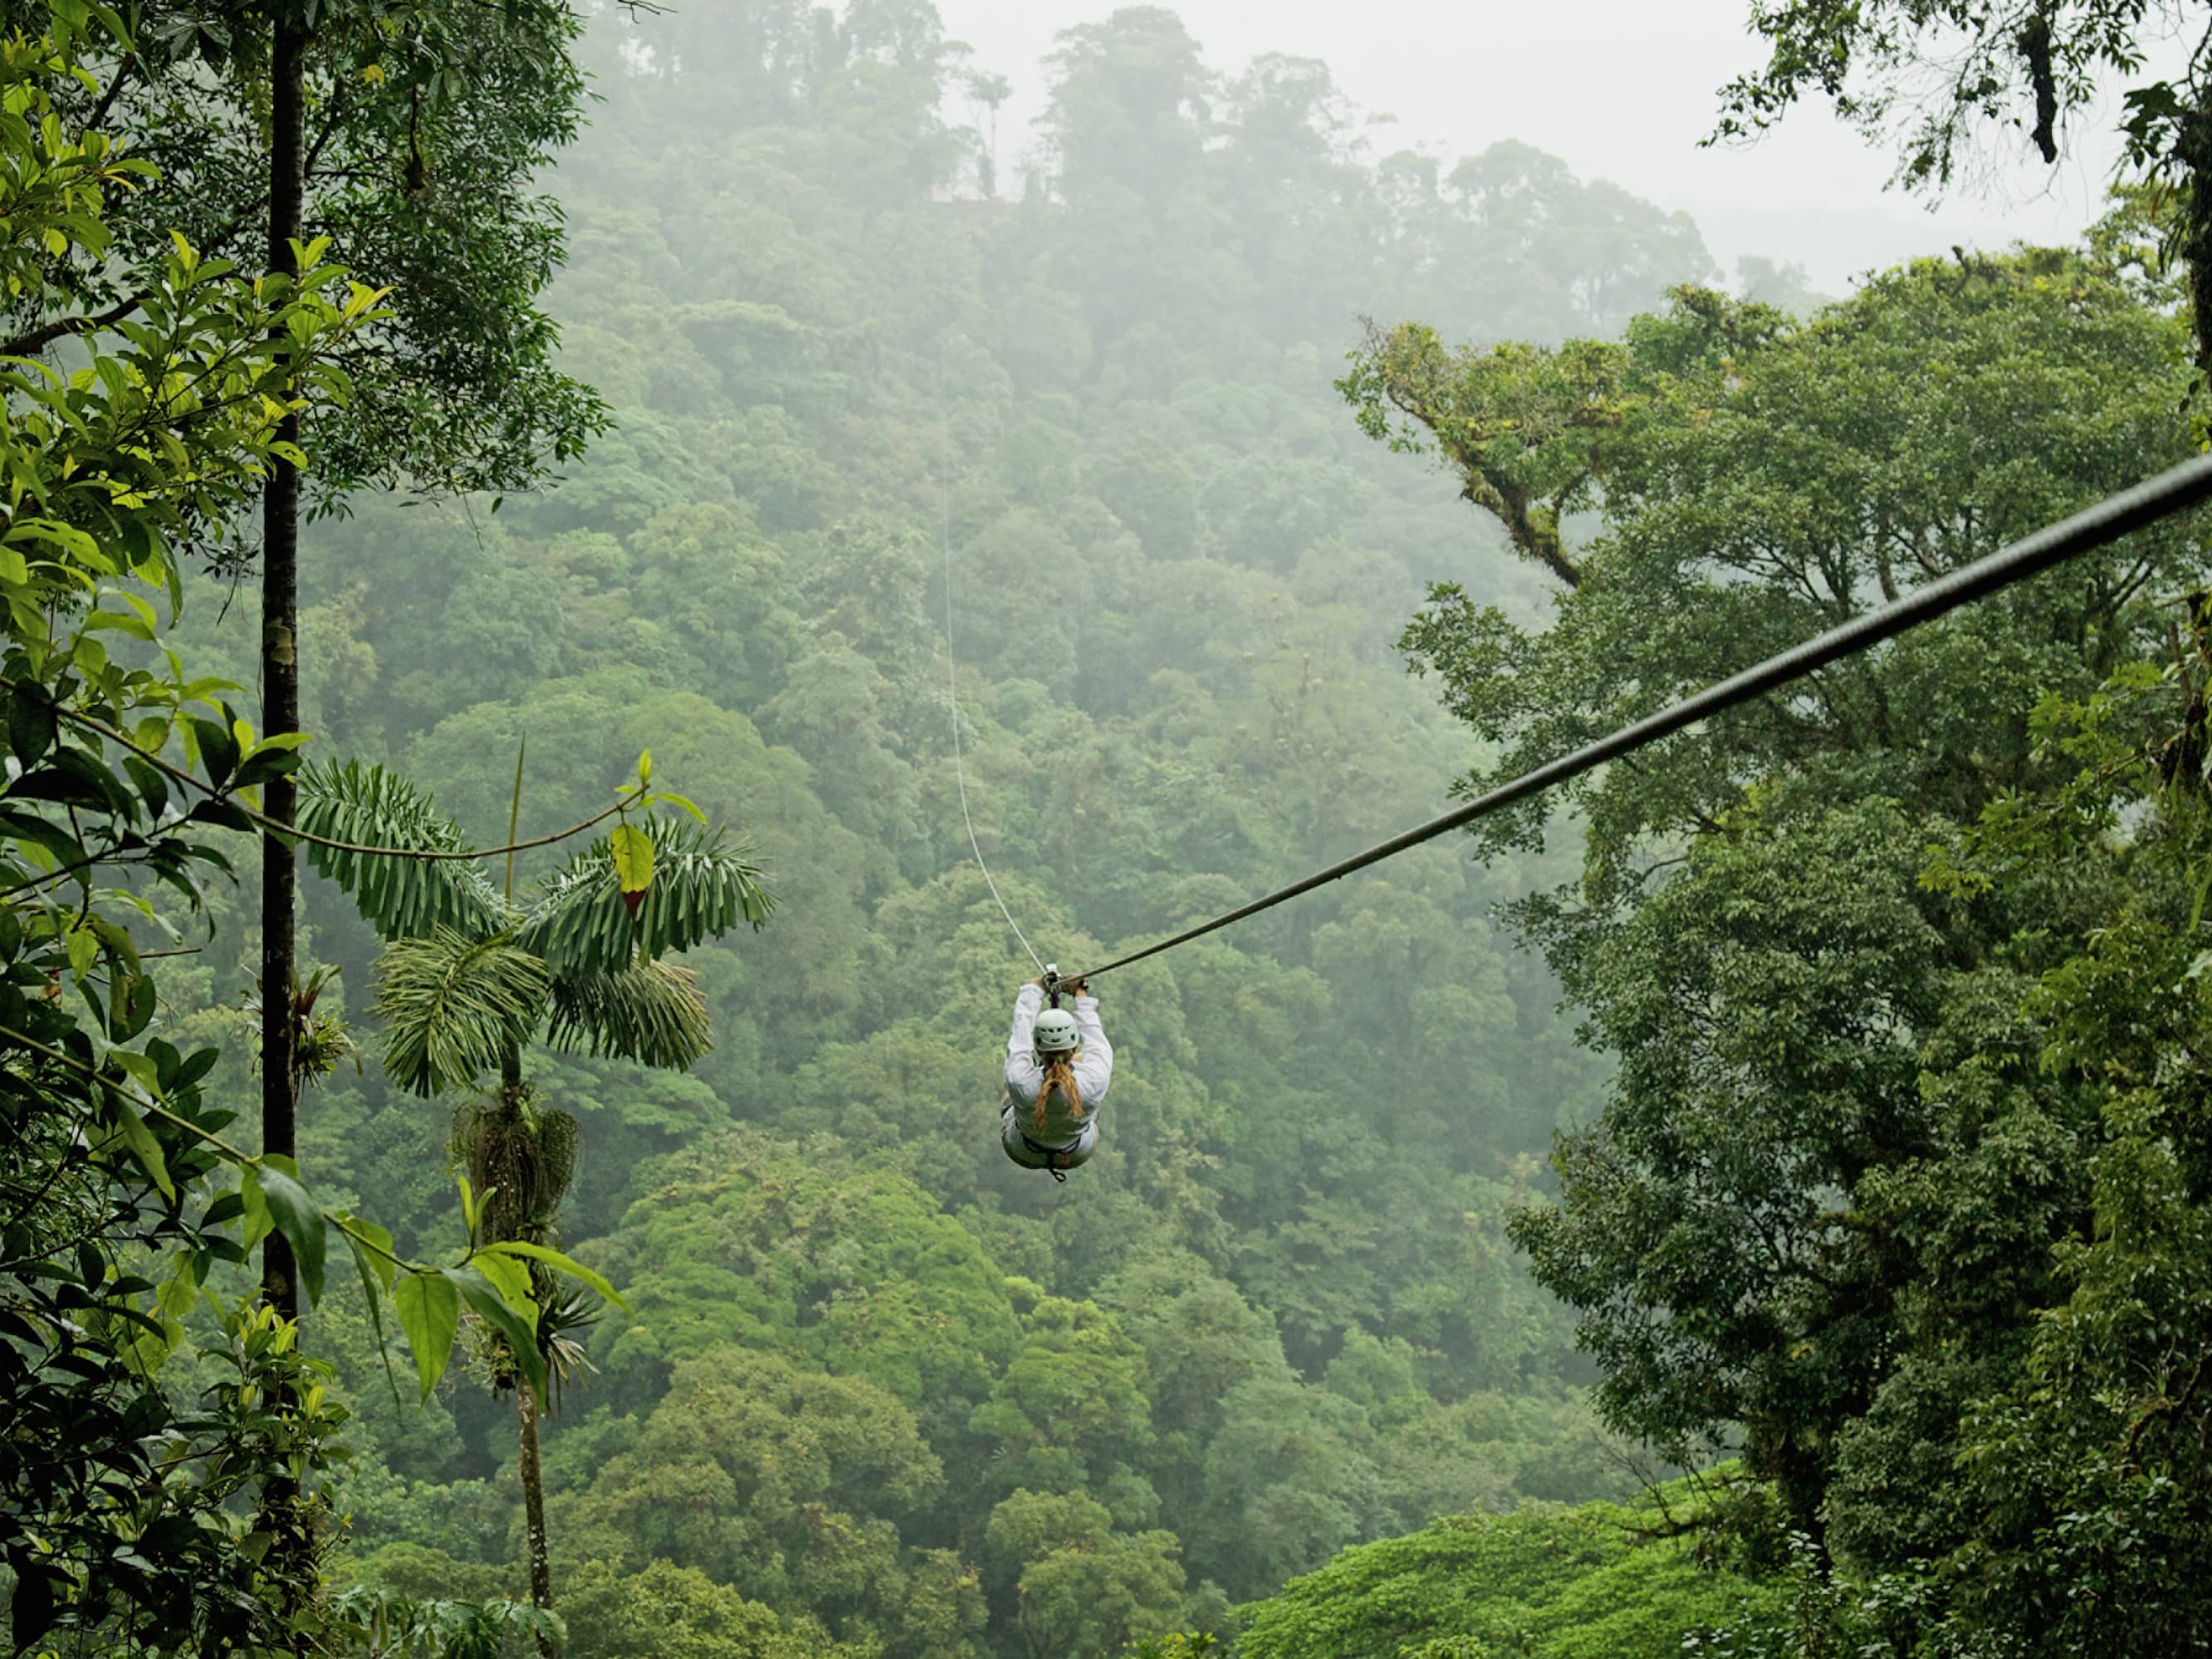 Zipline in Costa Rica 